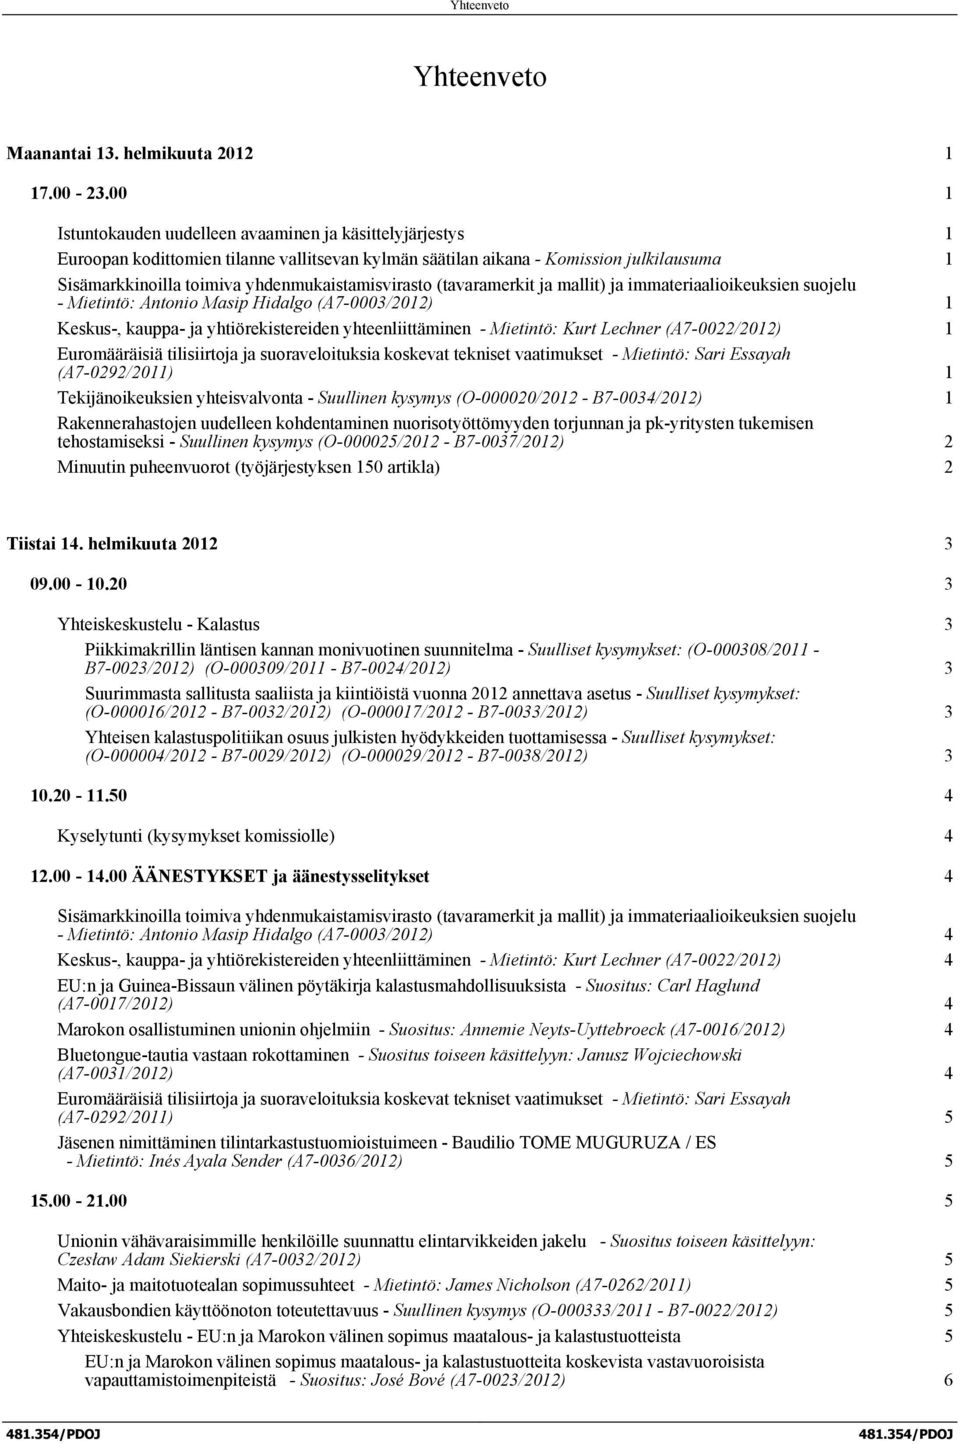 (tavaramerkit ja mallit) ja immateriaalioikeuksien suojelu - Mietintö: Antonio Masip Hidalgo (A7-0003/2012) 1 Keskus-, kauppa- ja yhtiörekistereiden yhteenliittäminen - Mietintö: Kurt Lechner